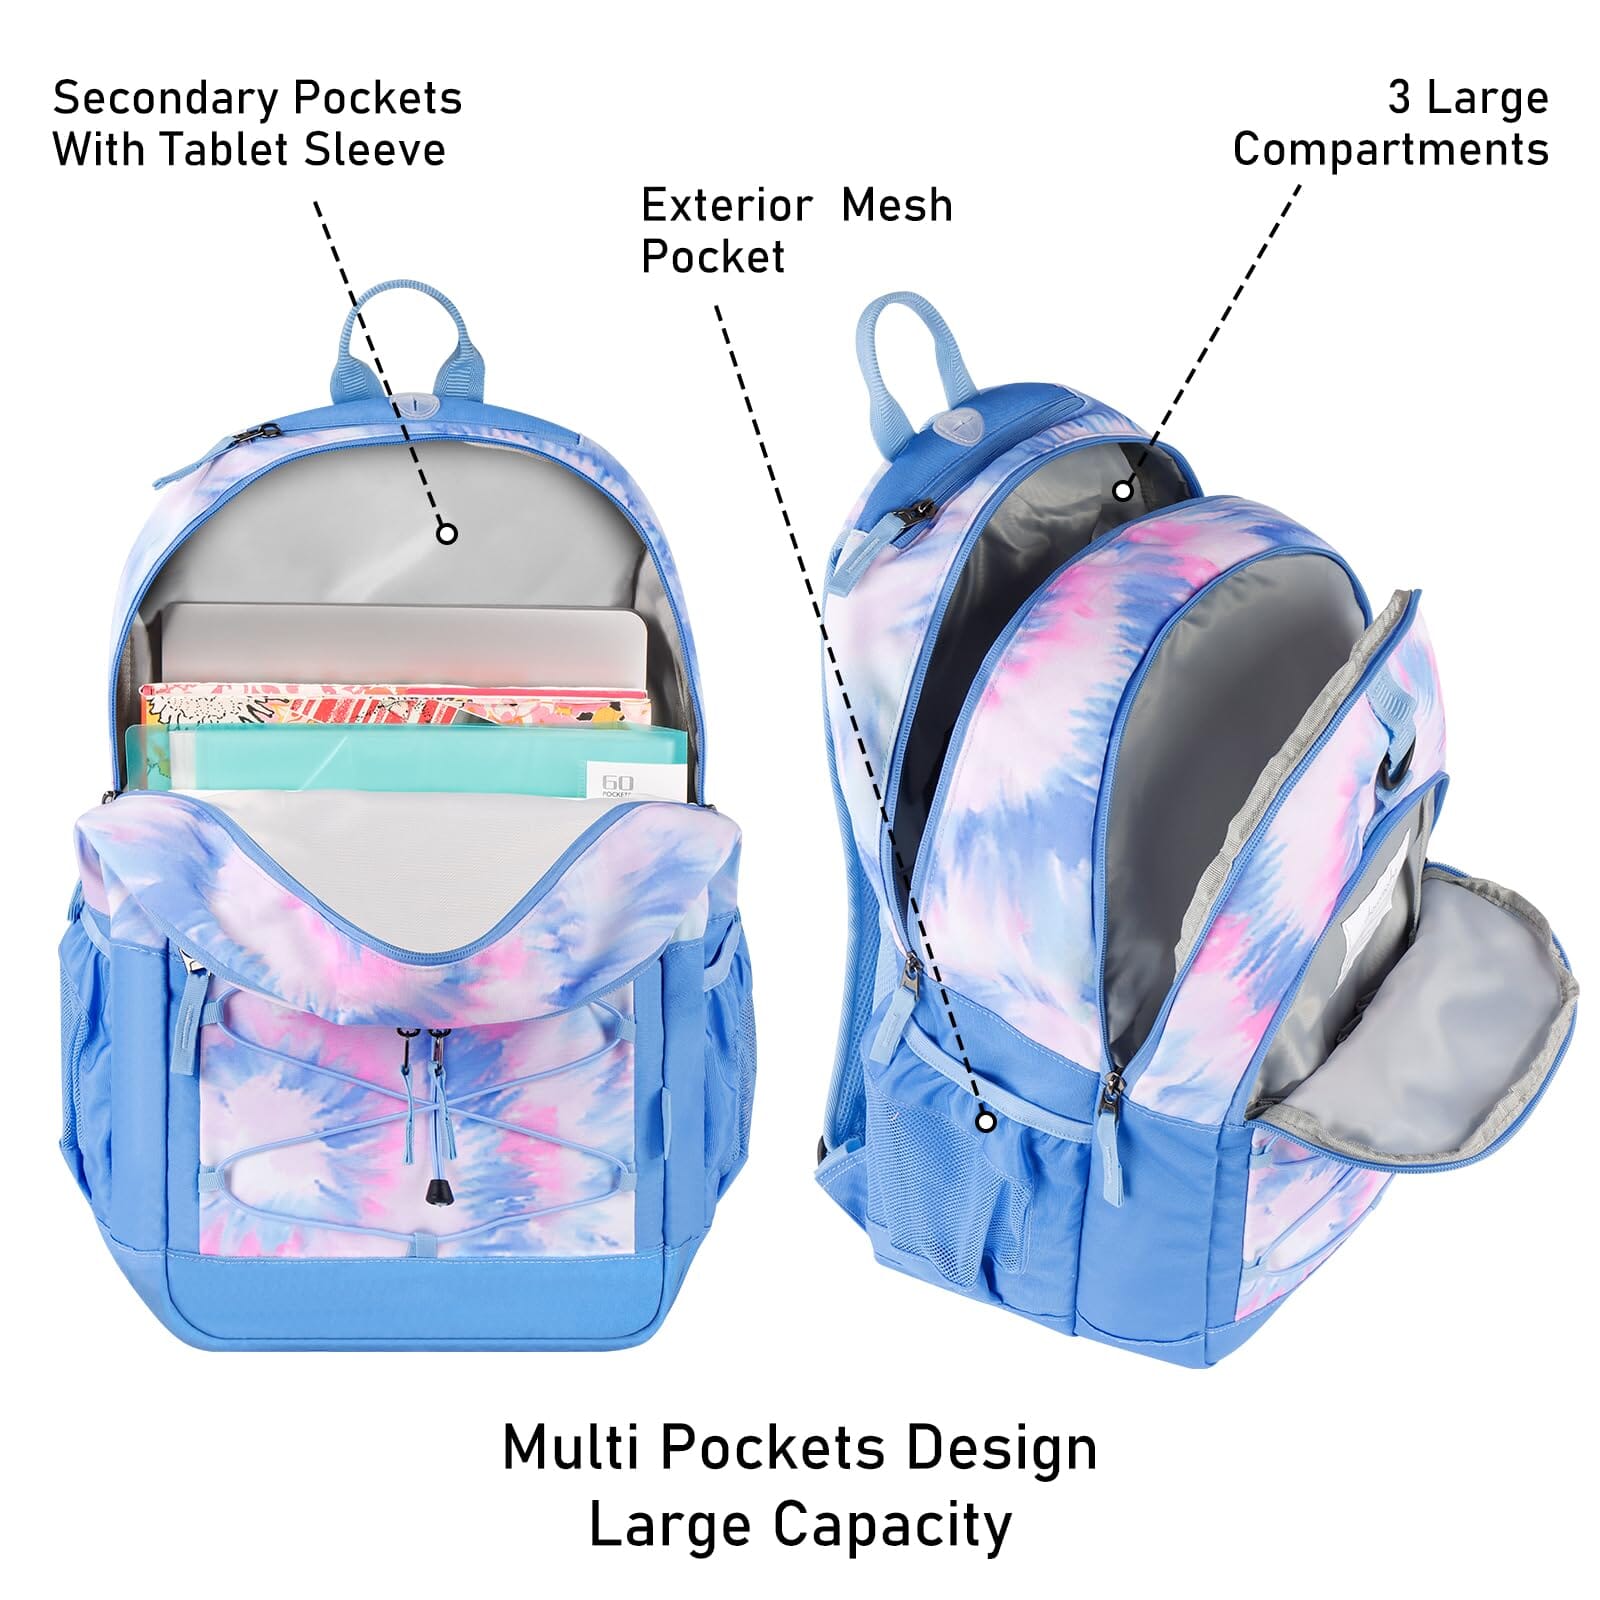 Choco Mocha Girls Lunch Box for School, Galaxy Lunch Bag for Kids, Blue  Purple